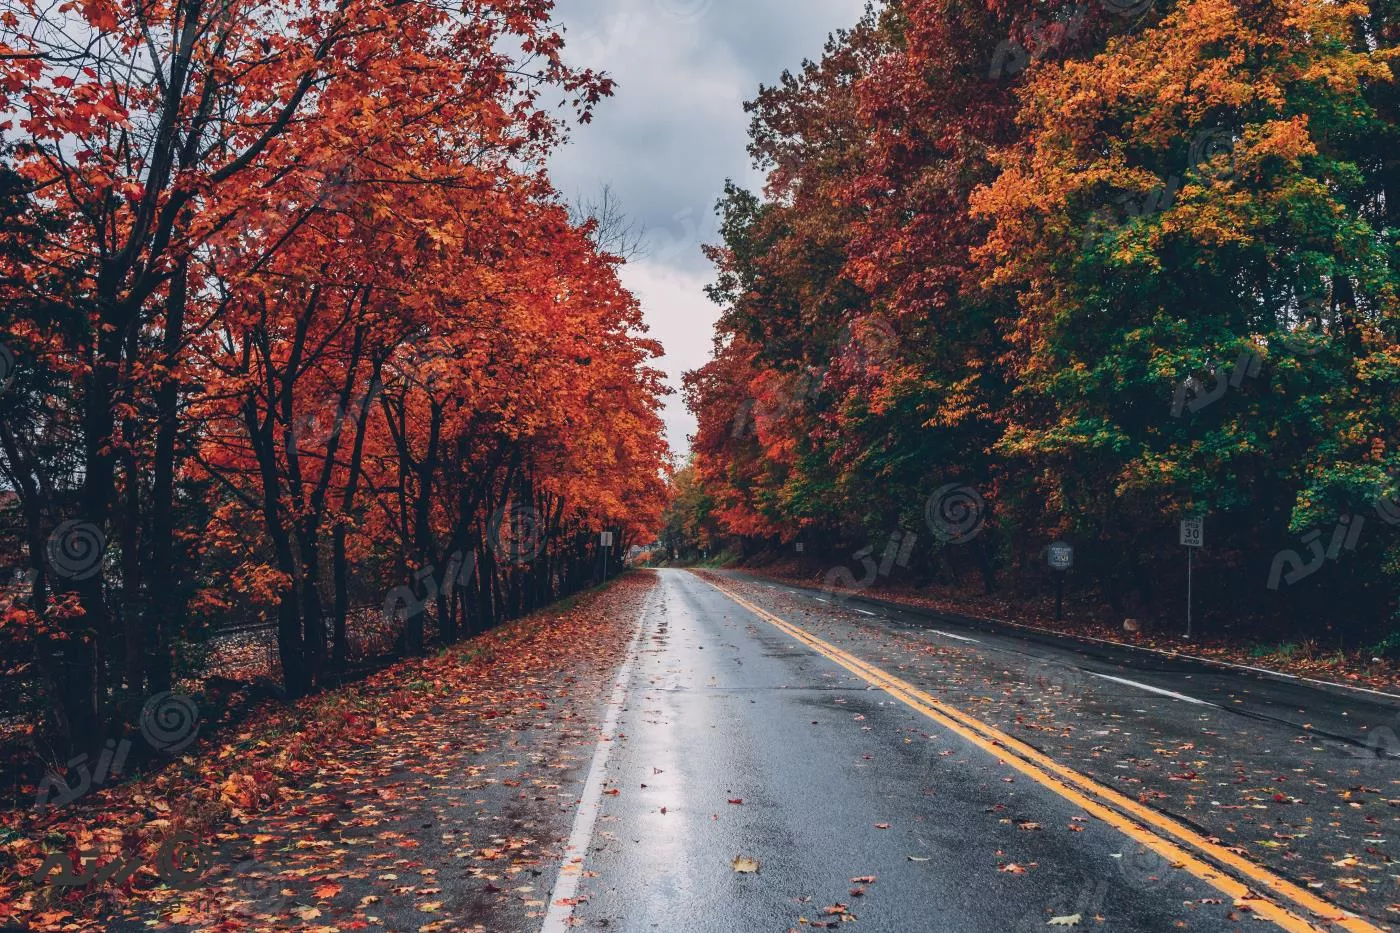 عکس با کیفیت از جاده احاطه شده با درختان پاییزی با برگ های قرمز و نارنجی با کیفیت فوق العاده 22063